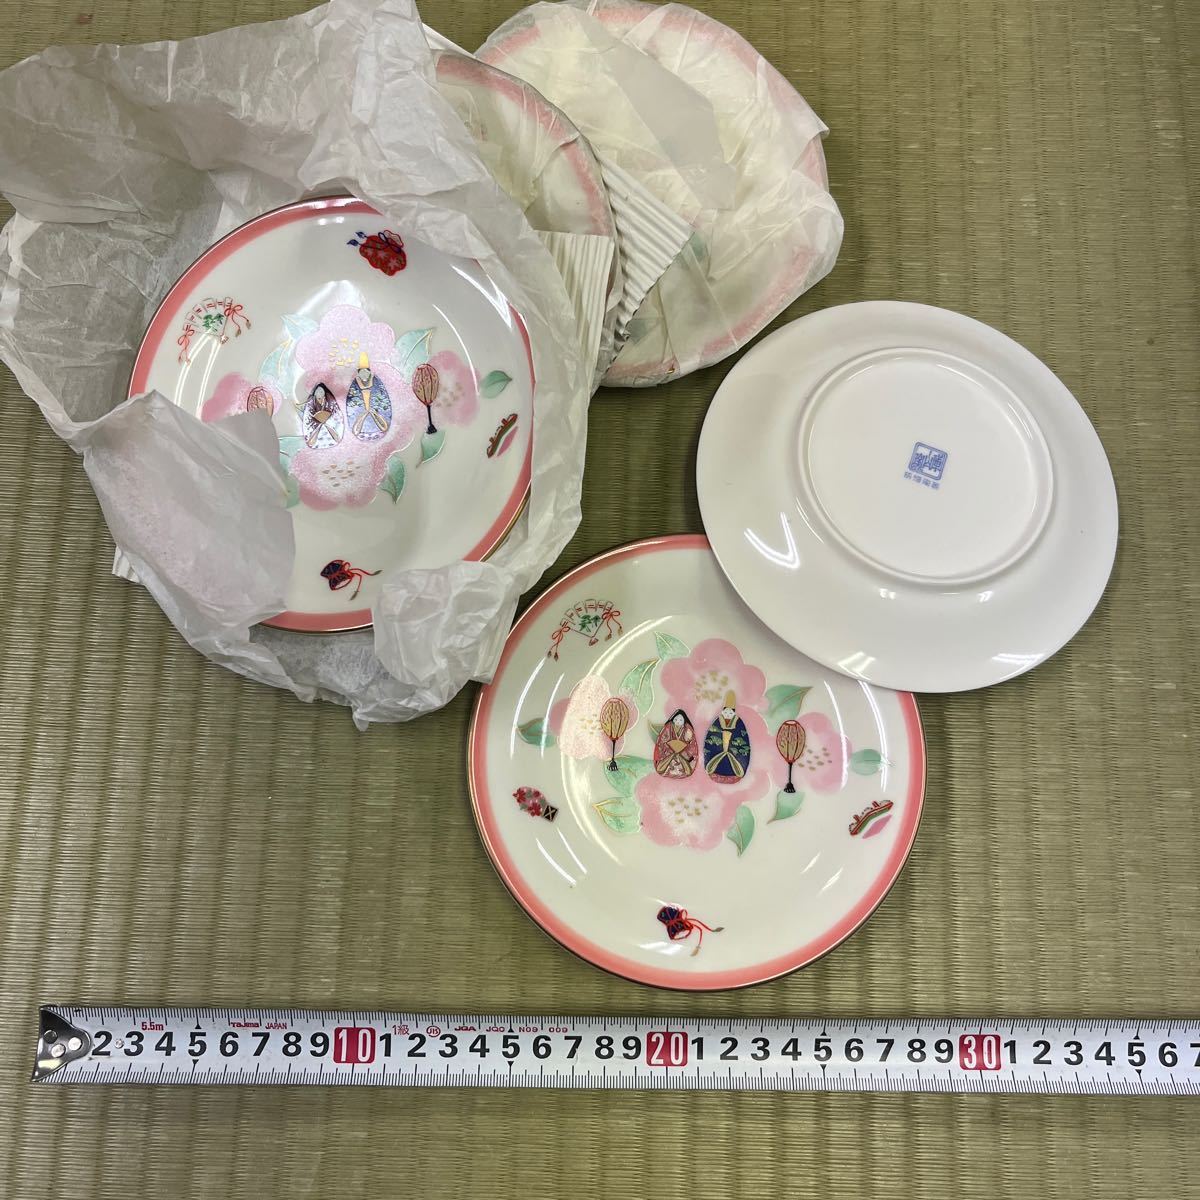 戸0131 未使用 雛 皿 陶器皿の画像1